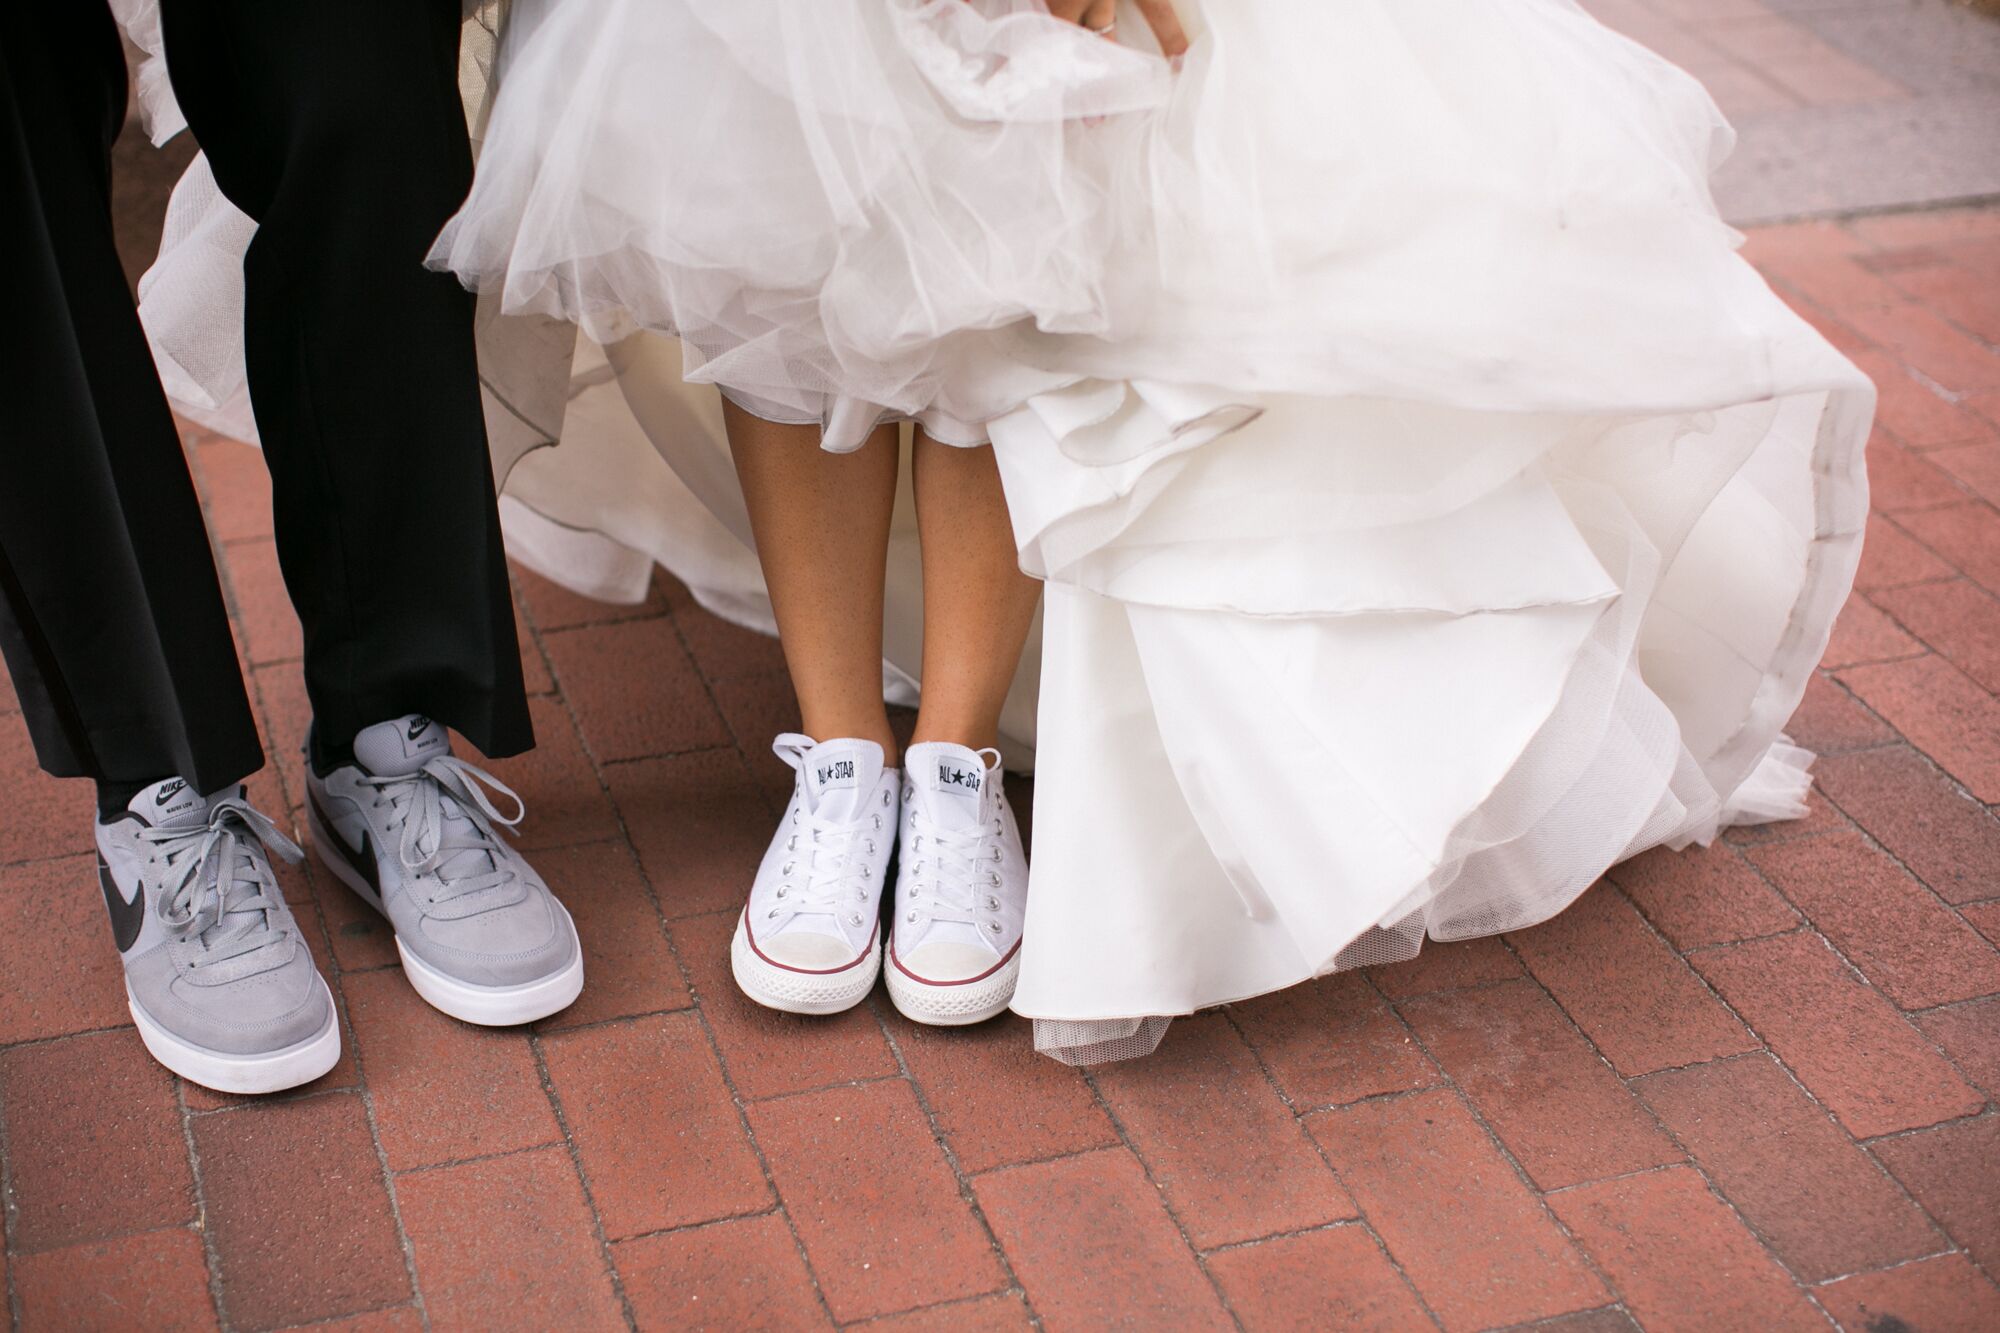 converse as wedding shoes